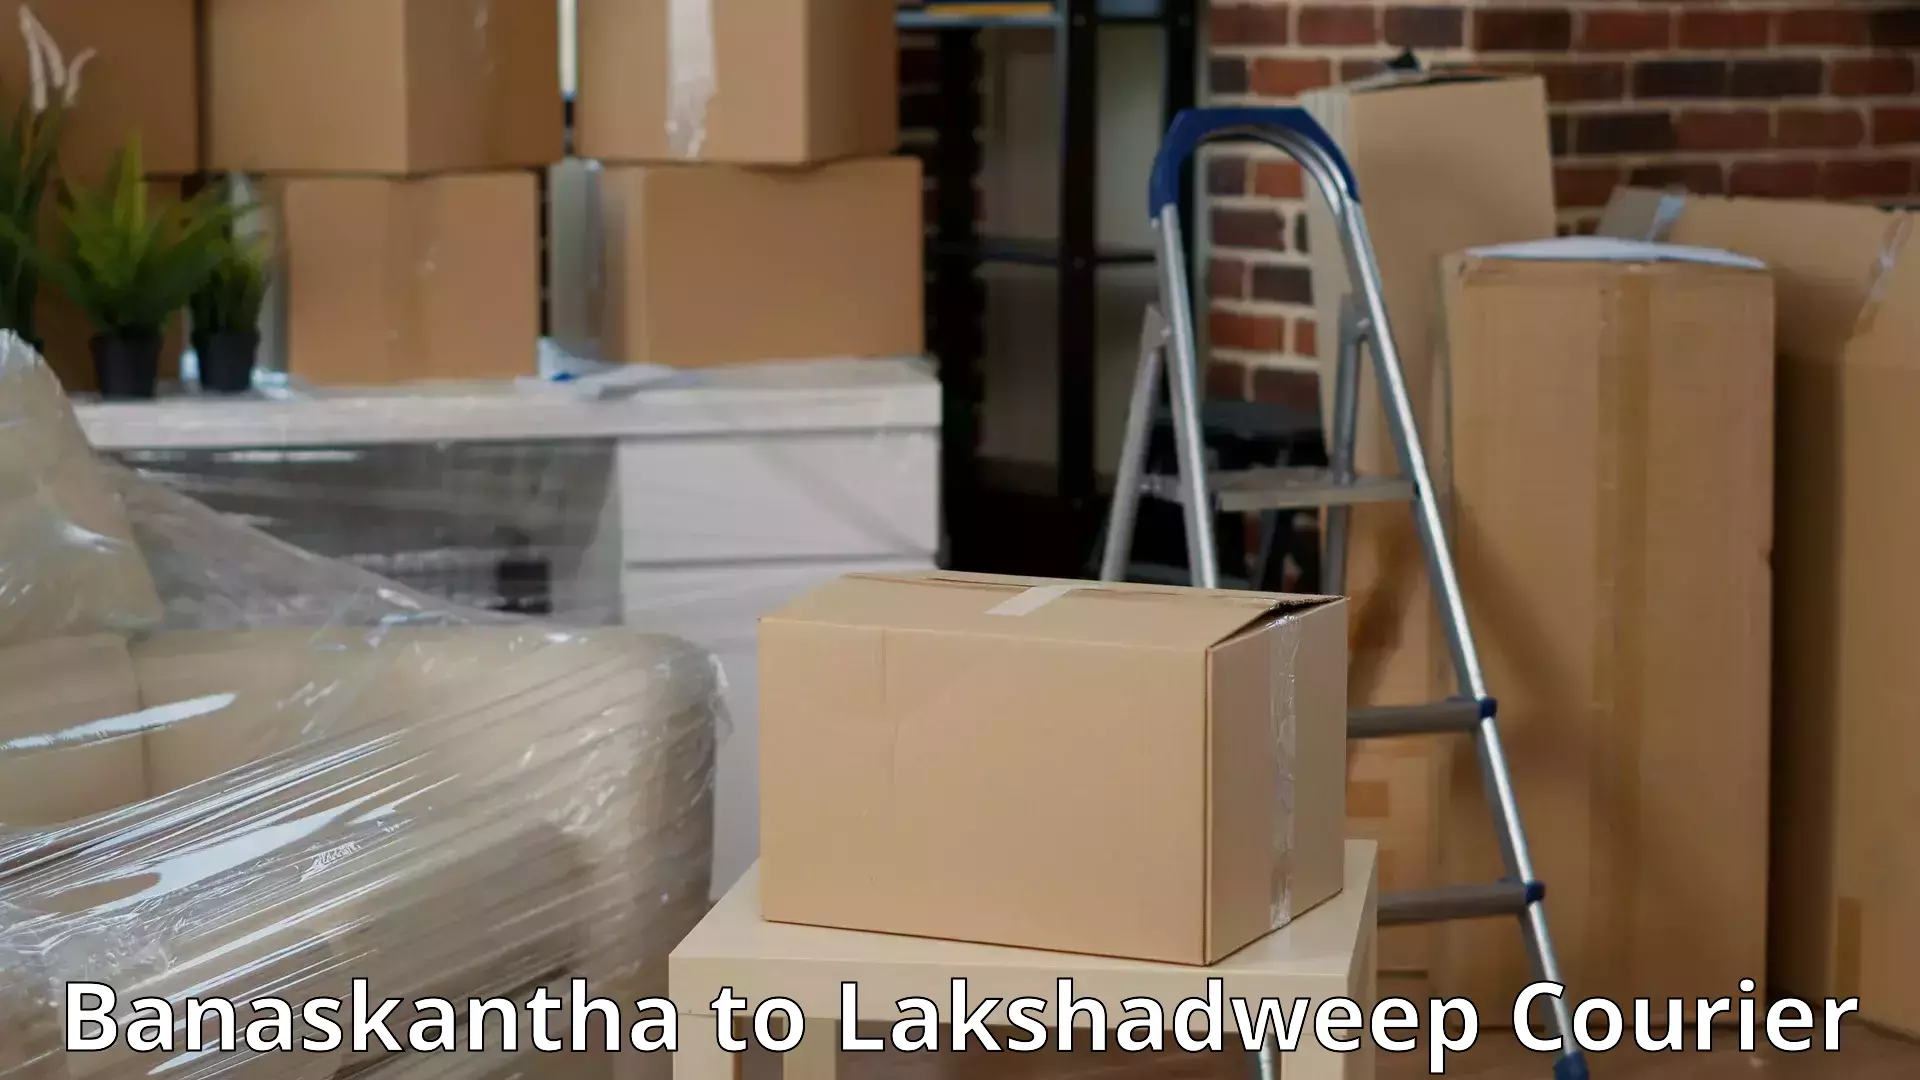 Budget-friendly movers Banaskantha to Lakshadweep